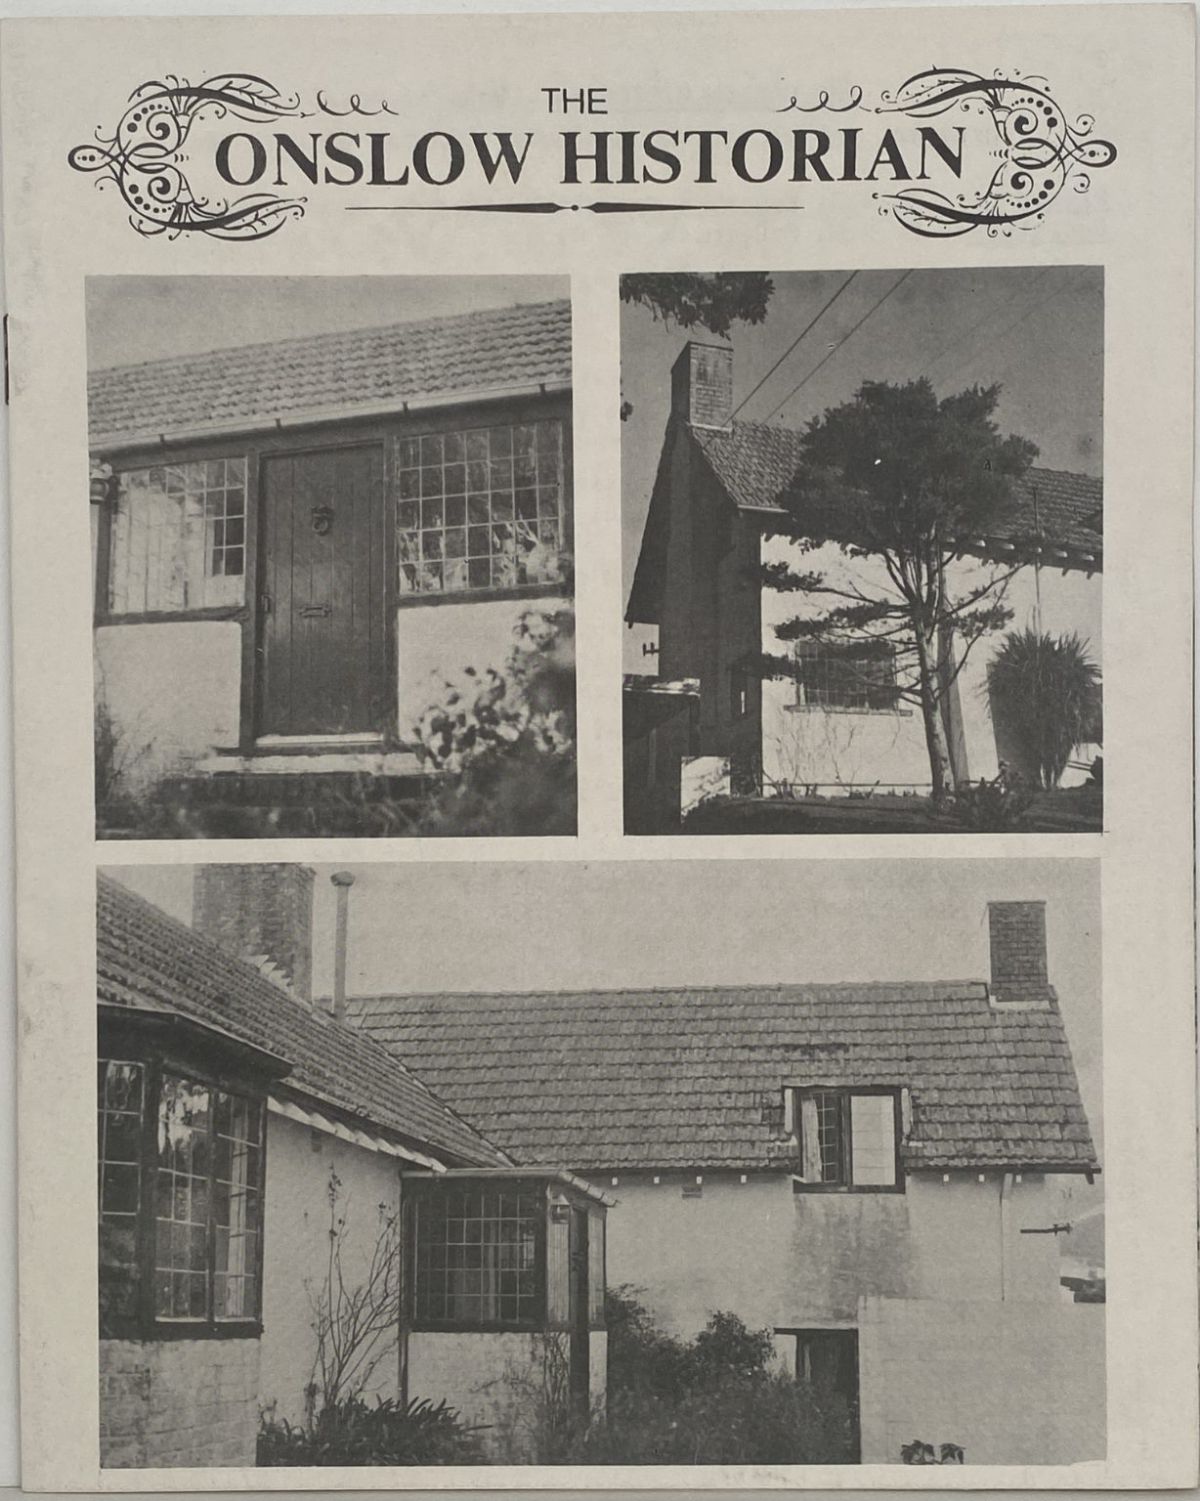 THE ONSLOW HISTORIAN: Vol. 1 - No. 3, 1971